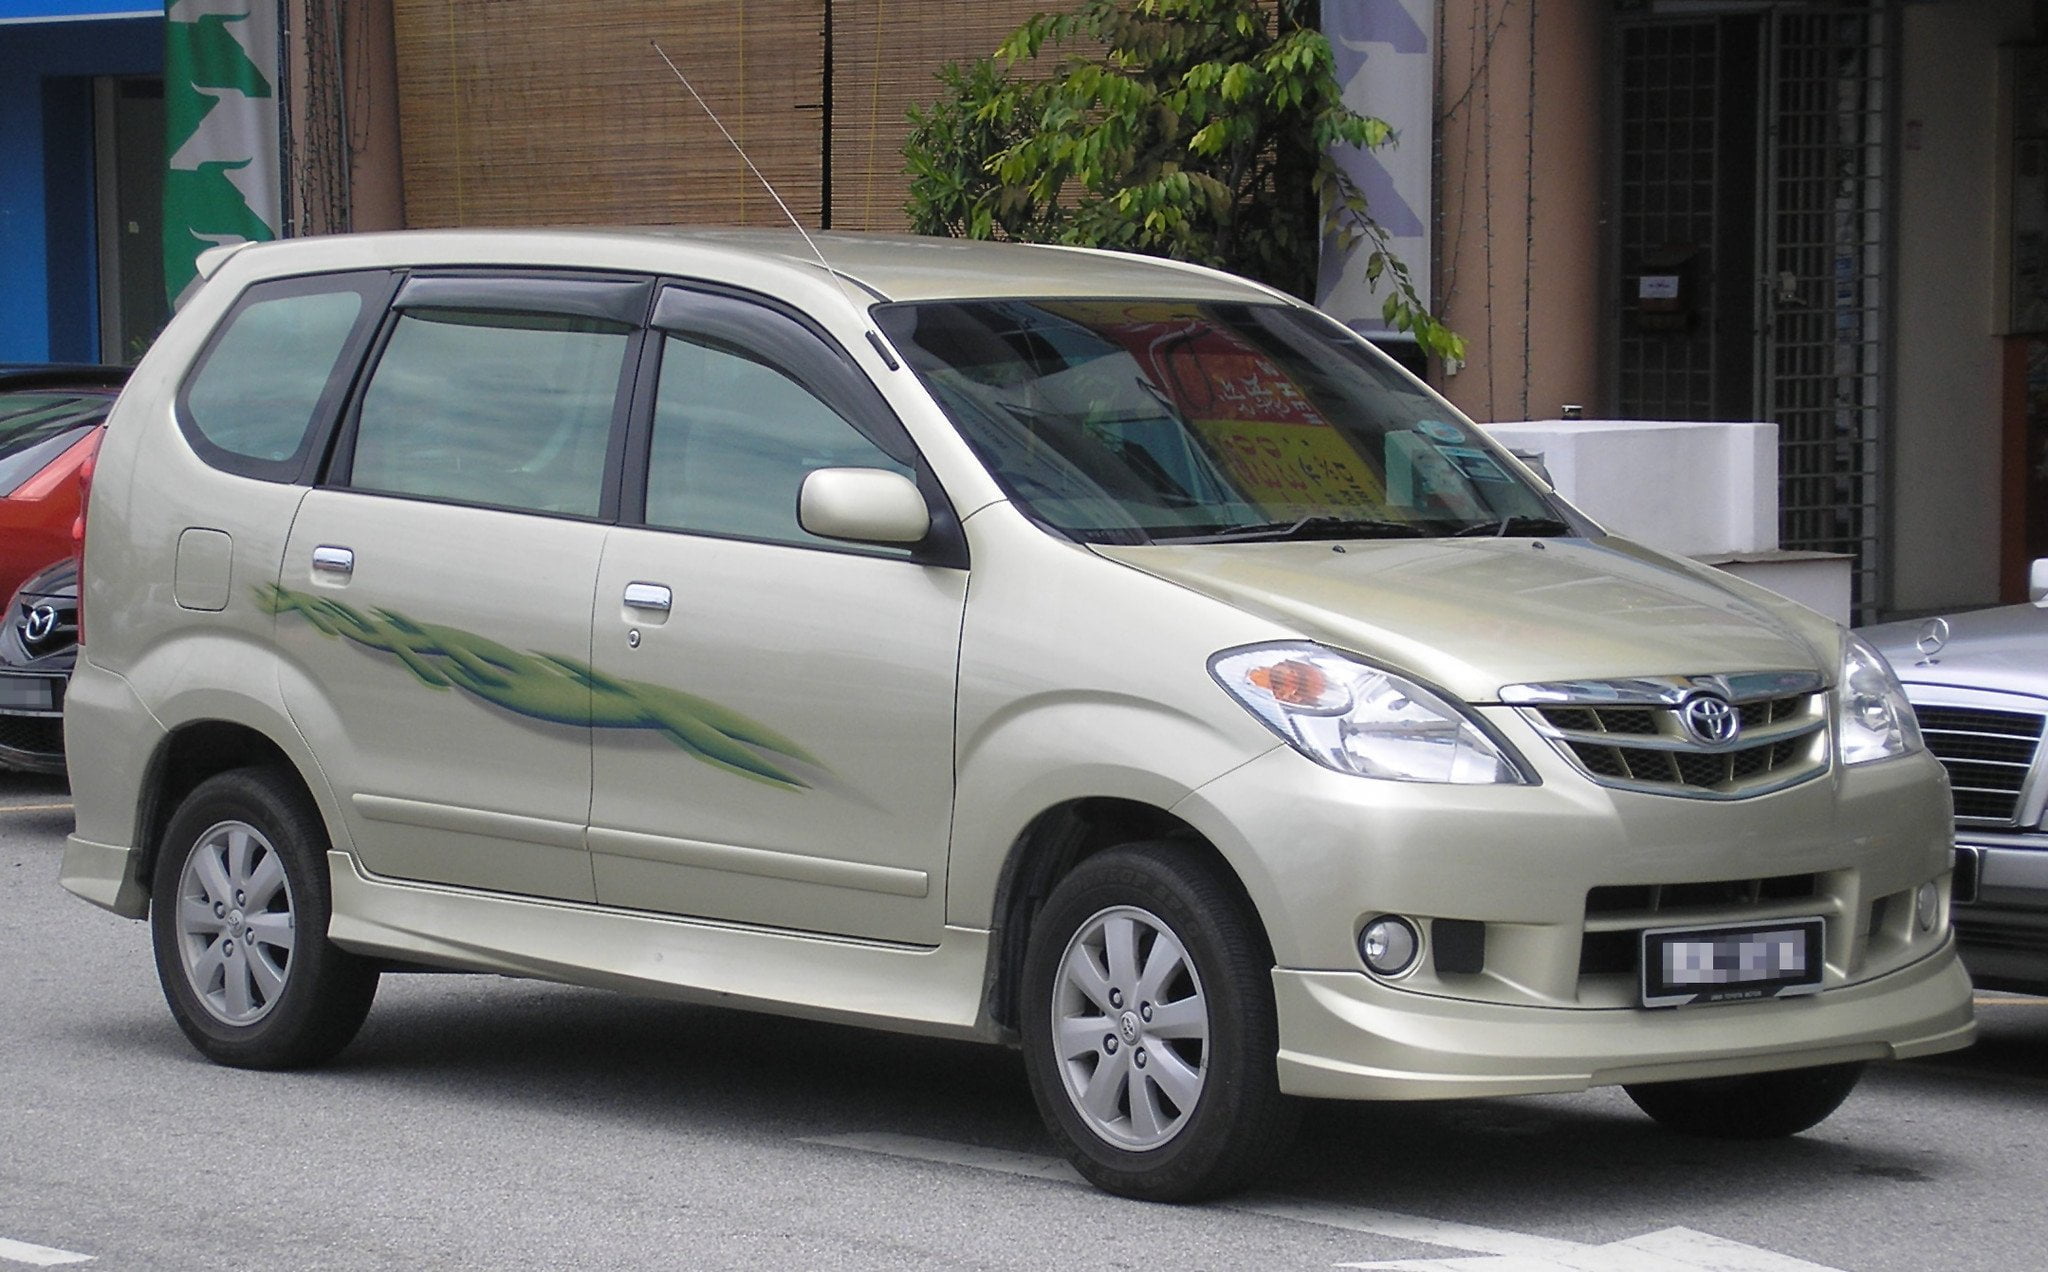 Toyota Avanza first generation first facelift front Serdang